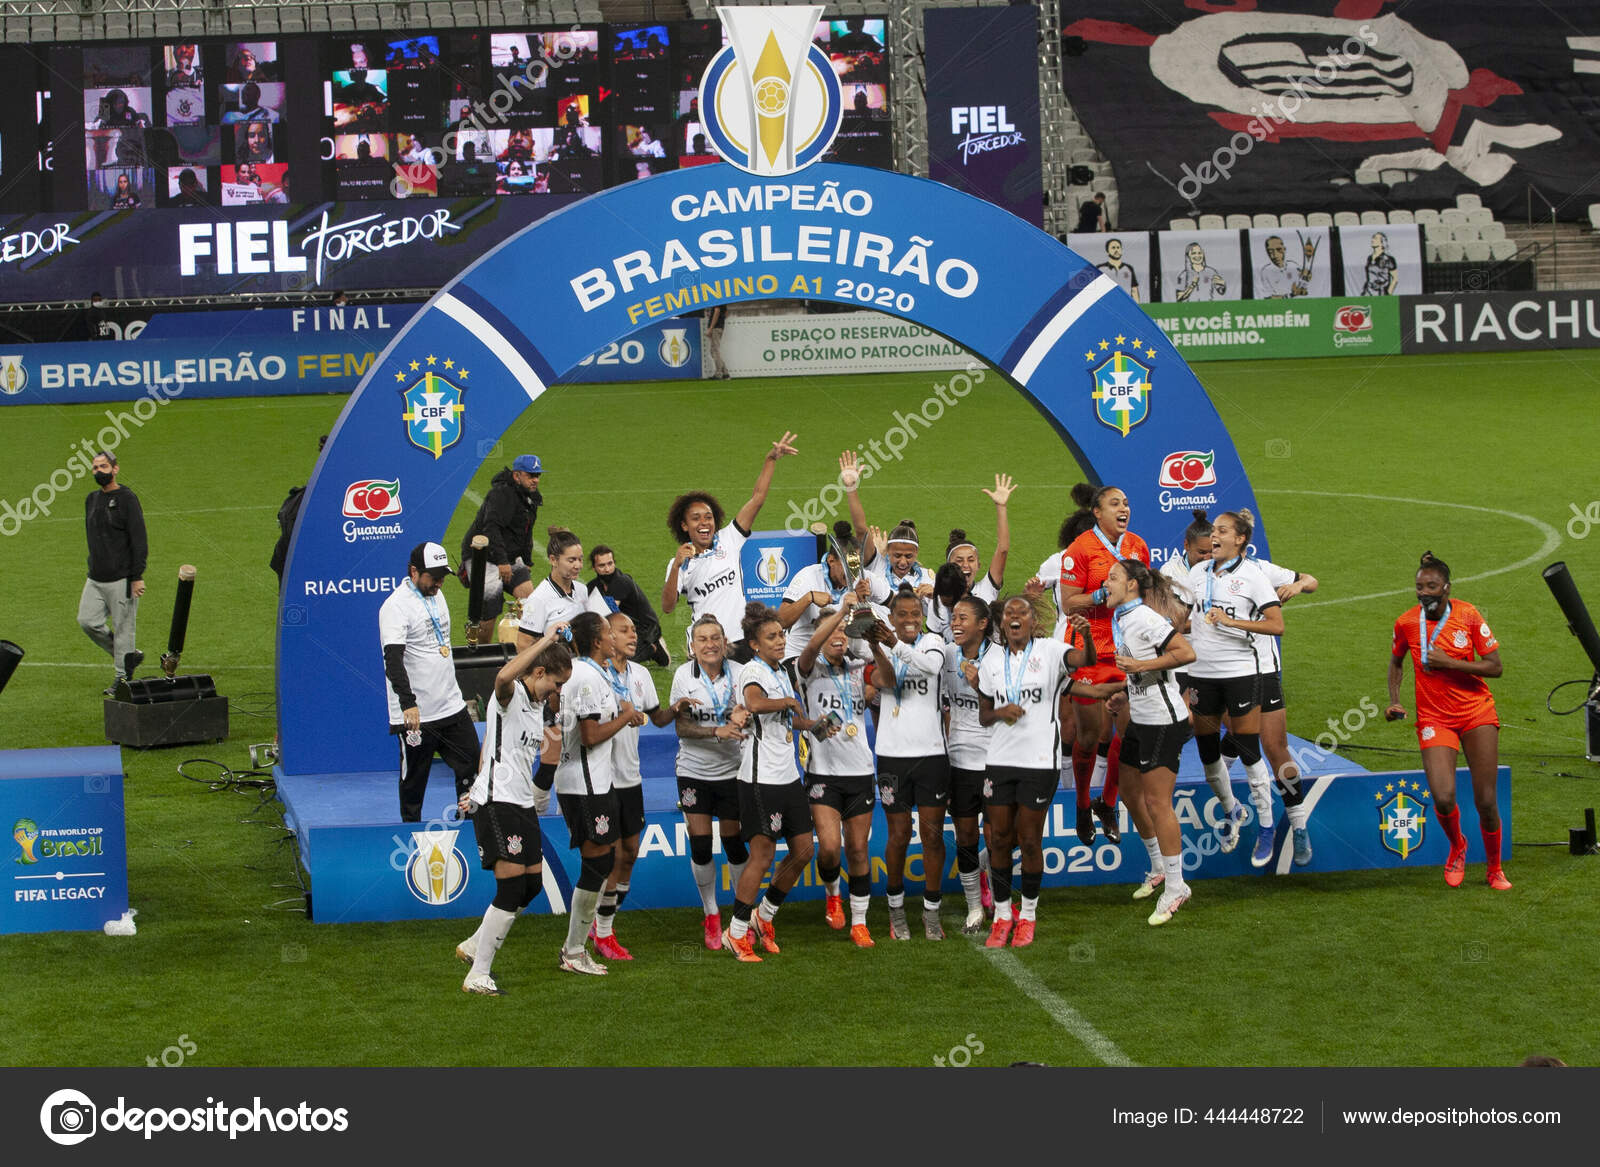 Paulista Feminino: venda de ingressos populares para a semifinal contra o  Corinthians – Palmeiras